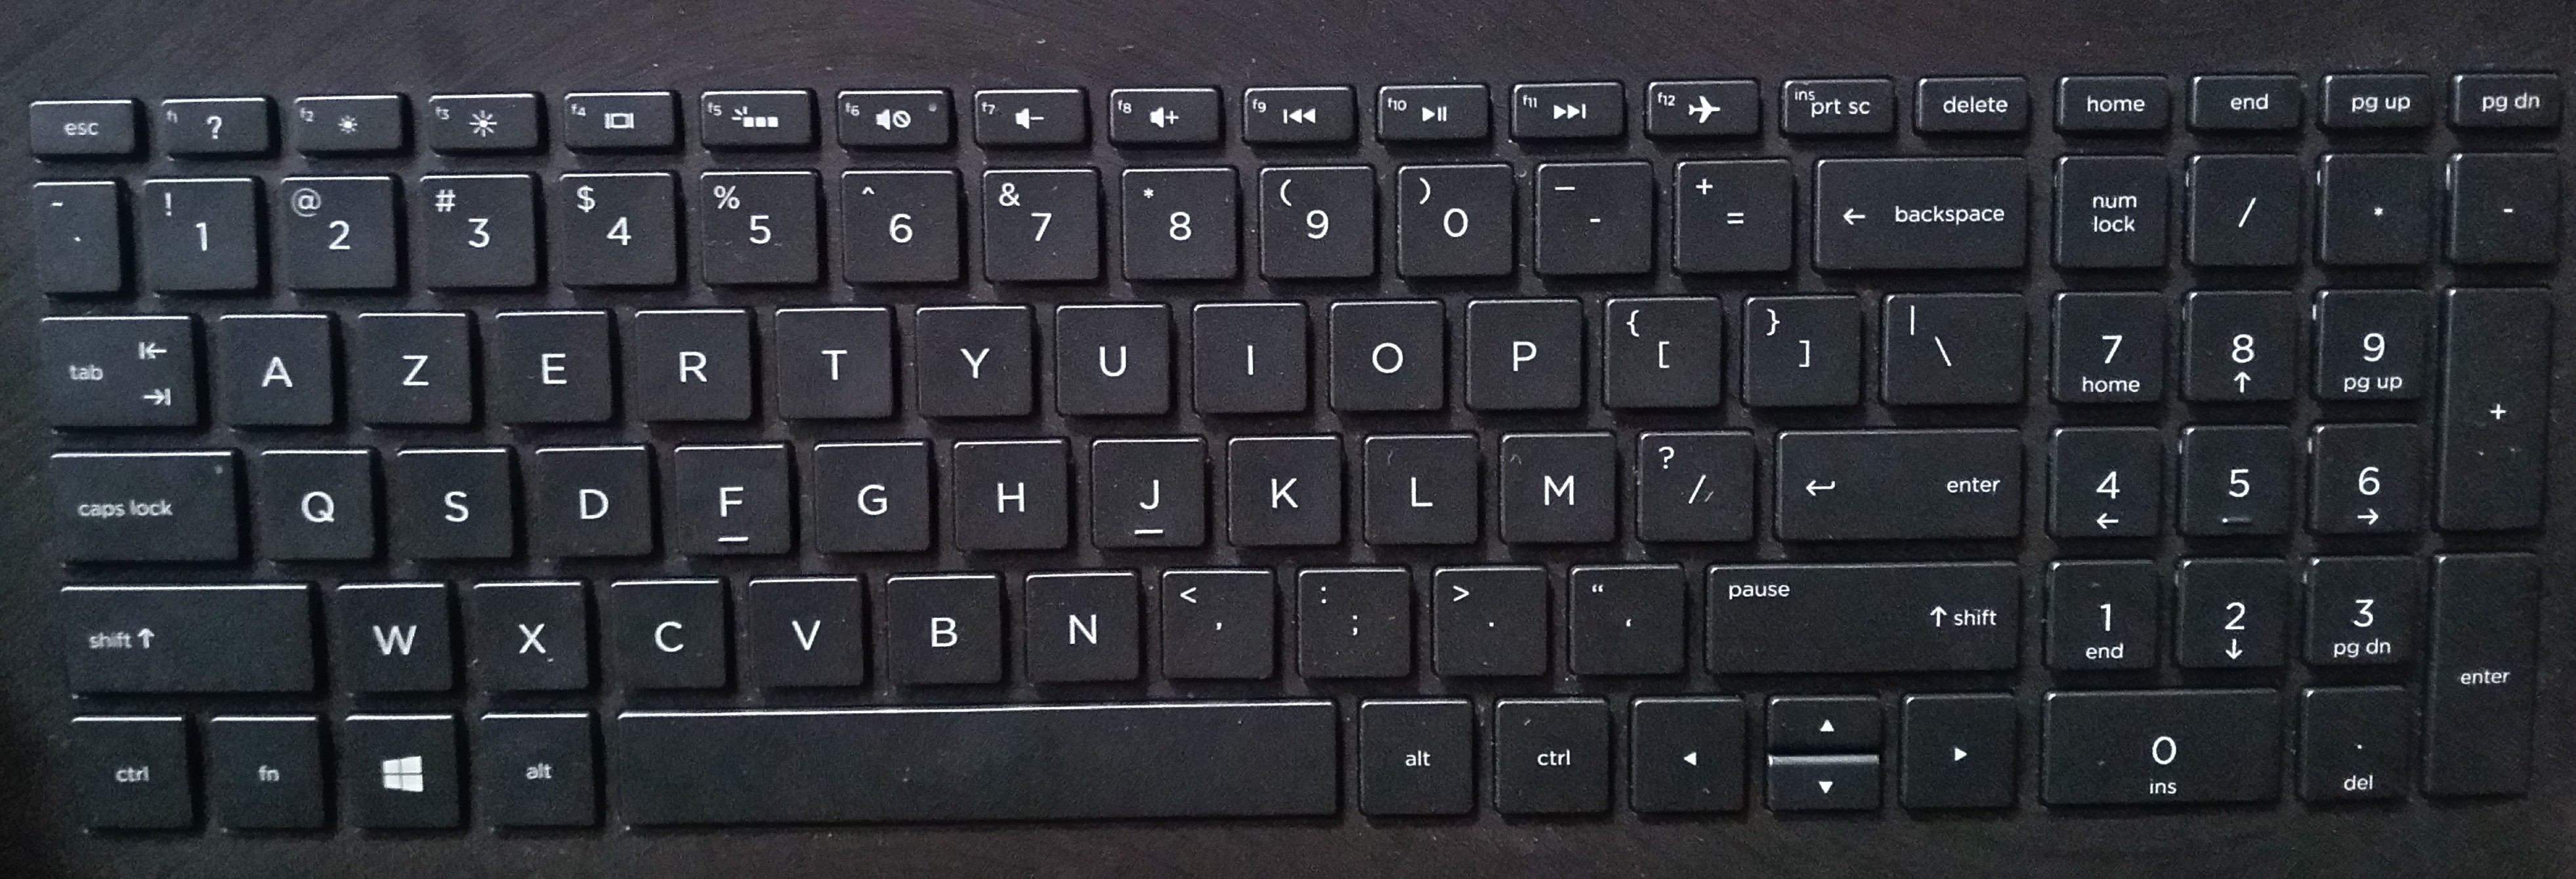 laptop keyboard layout diagram